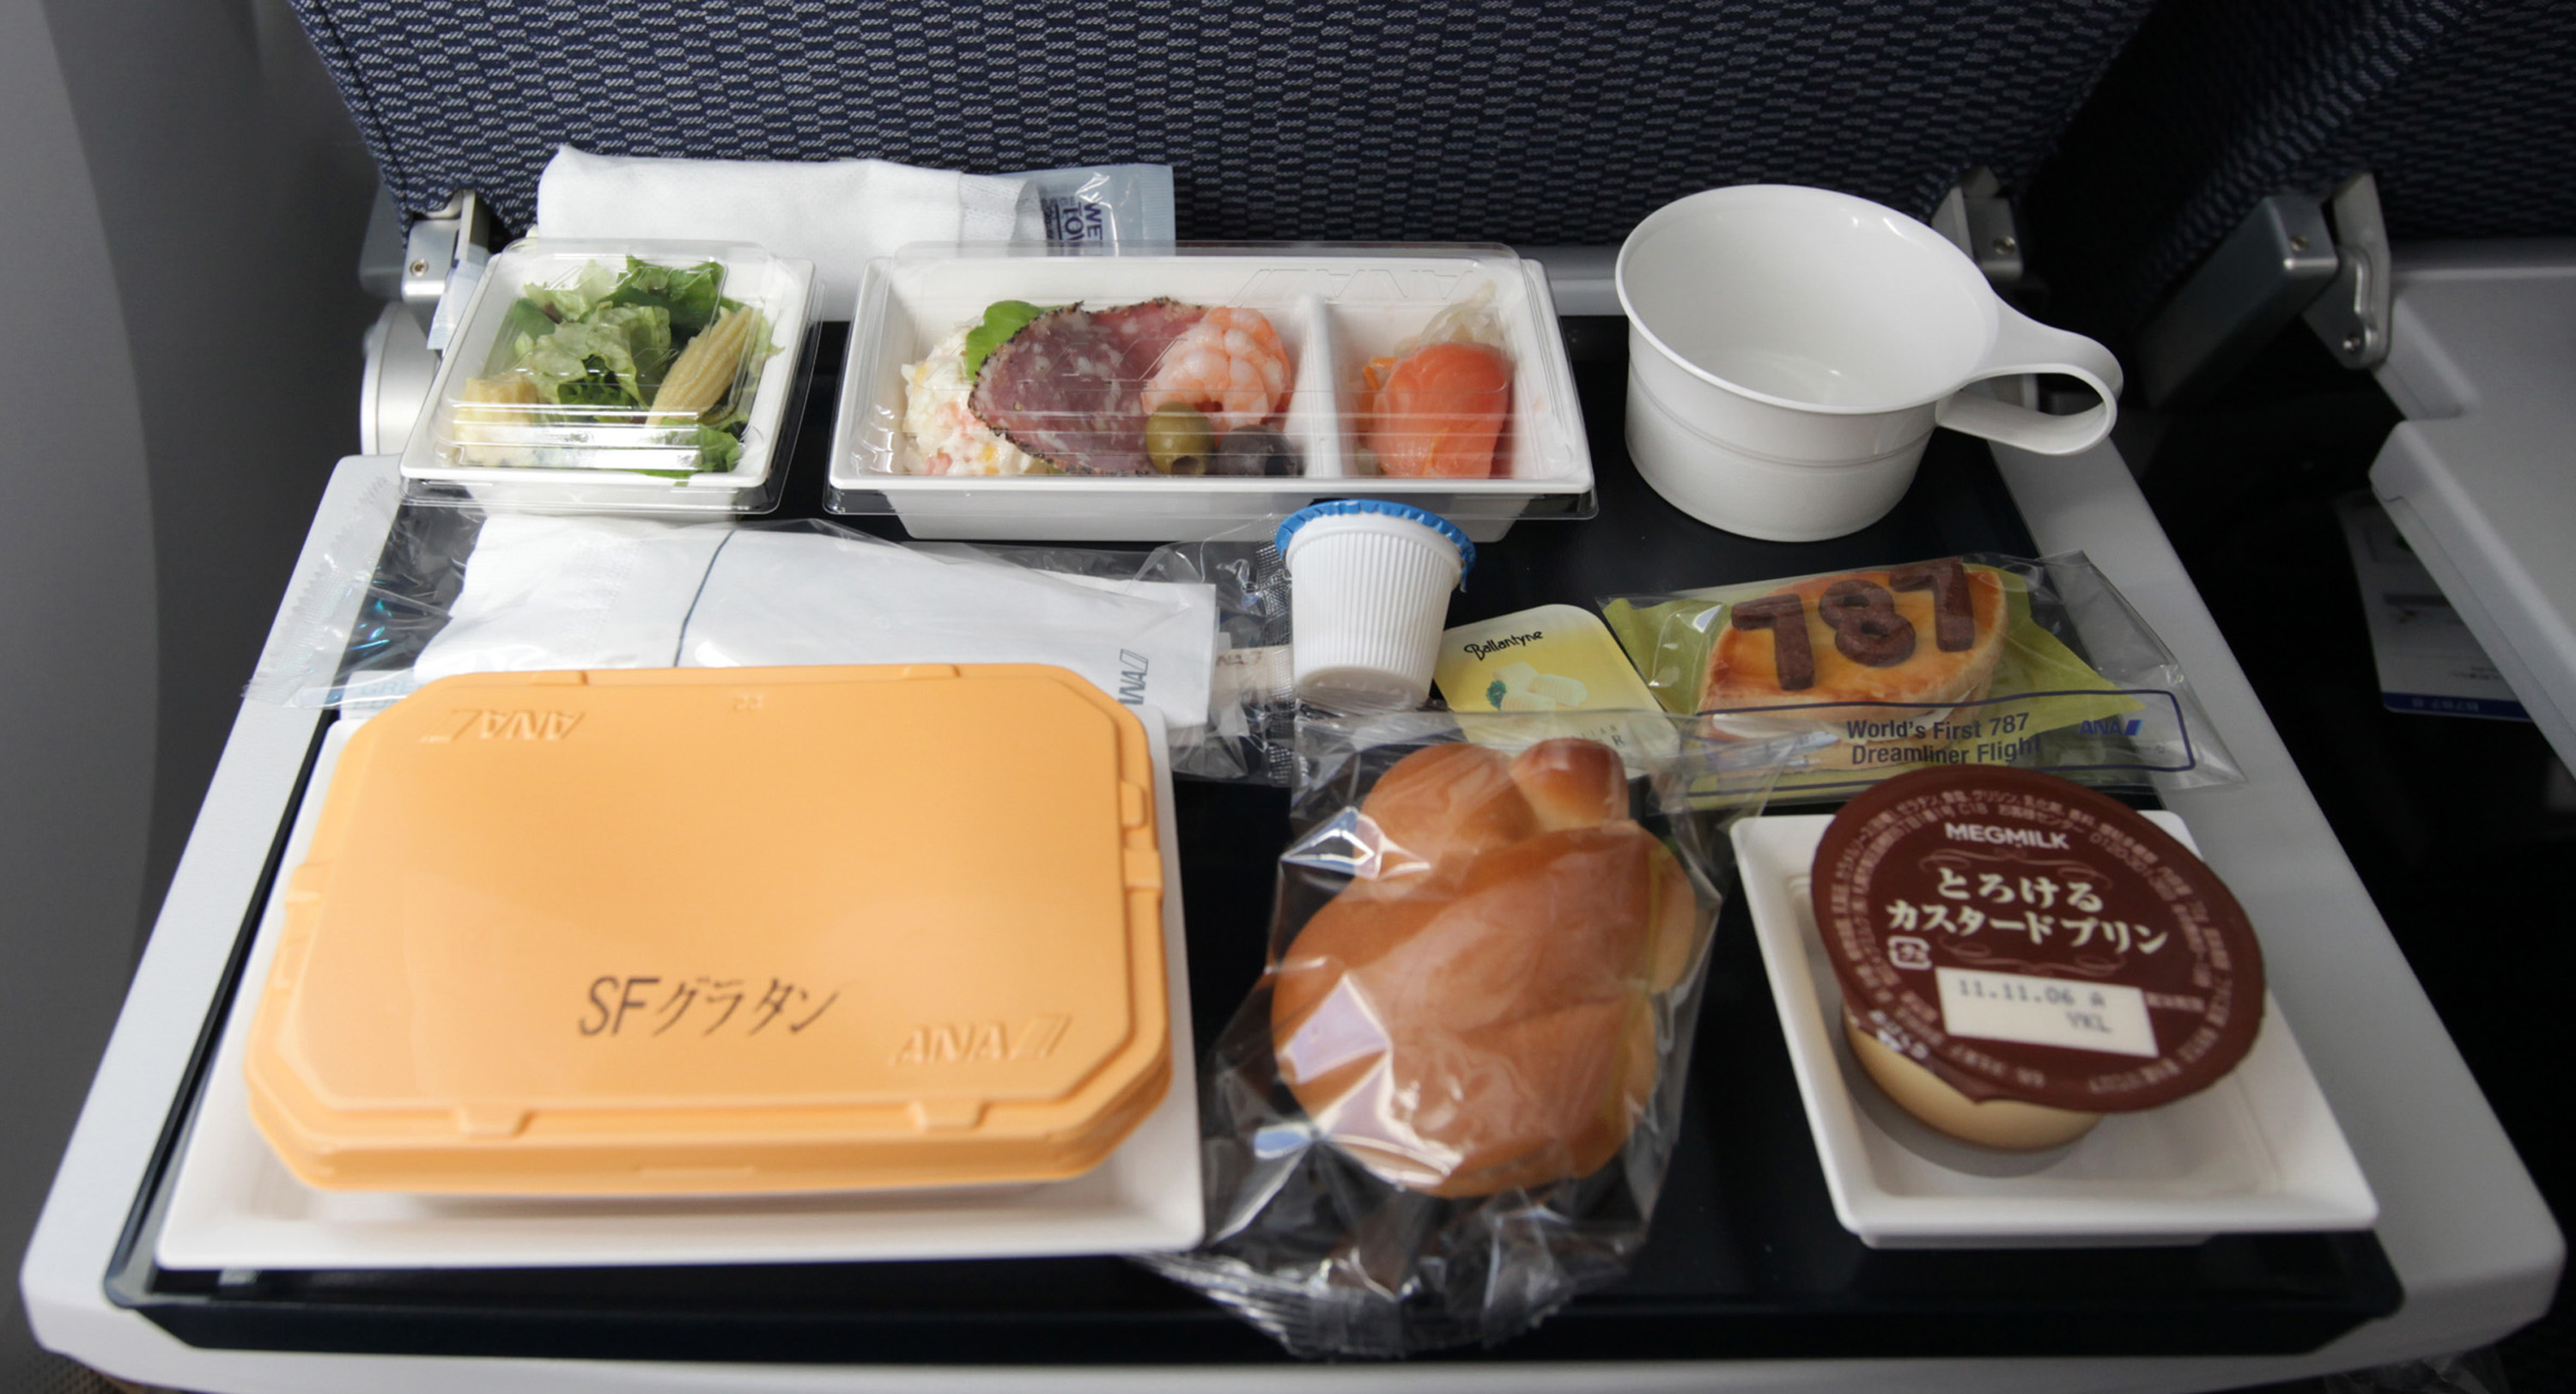 Das Essen im Flugzeug könnte Sie enttäuschen, bringen Sie also für alle Fälle Ihre eigenen Snacks mit